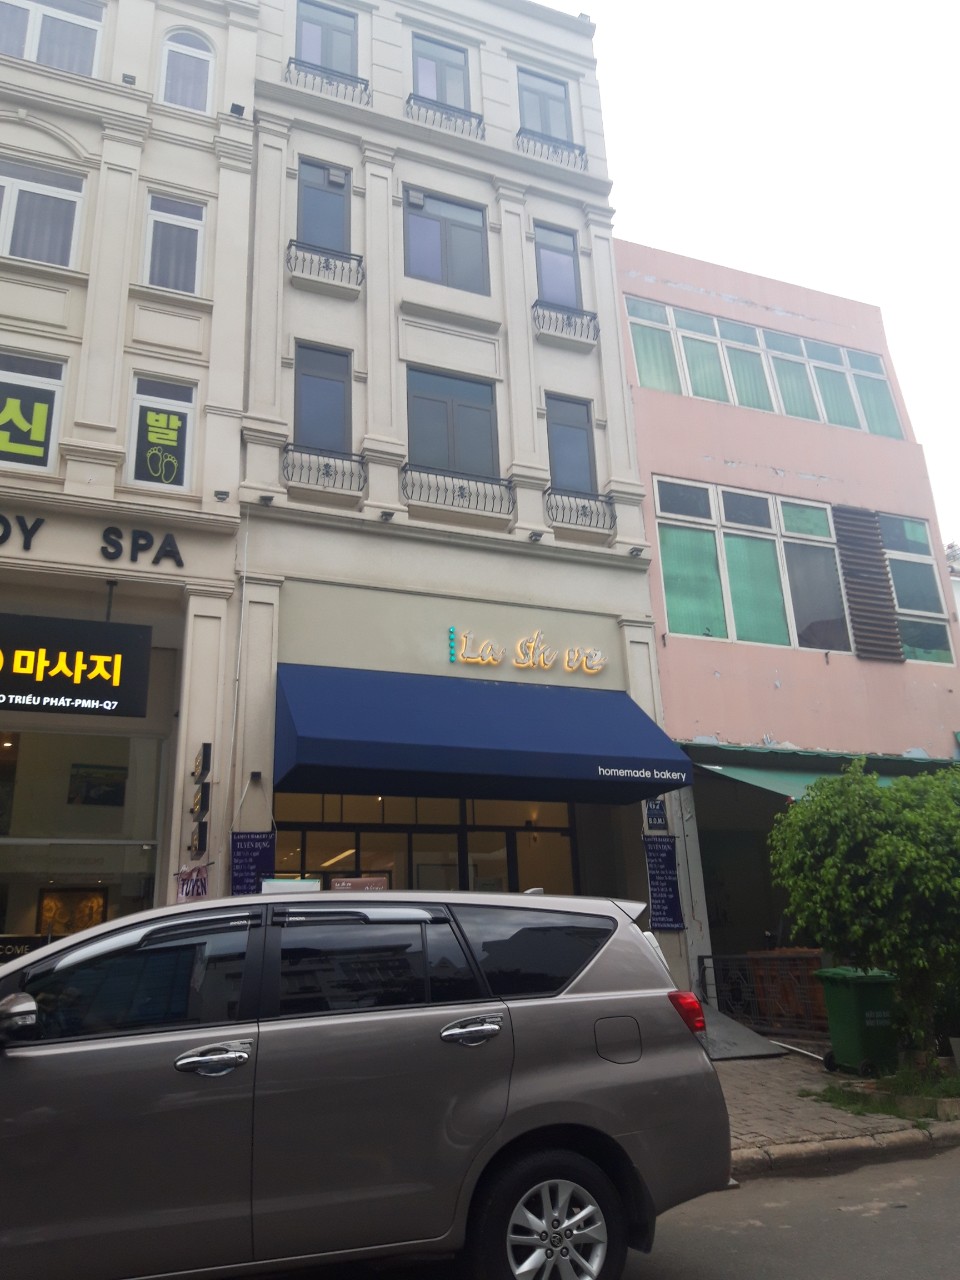 Cần cho thuê gấp nhà phố Hưng Gia, Phú Mỹ Hưng, Q7 nhà đẹp rộng rãi kinh doanh tốt Liên hệ 0915213434 PHONG.